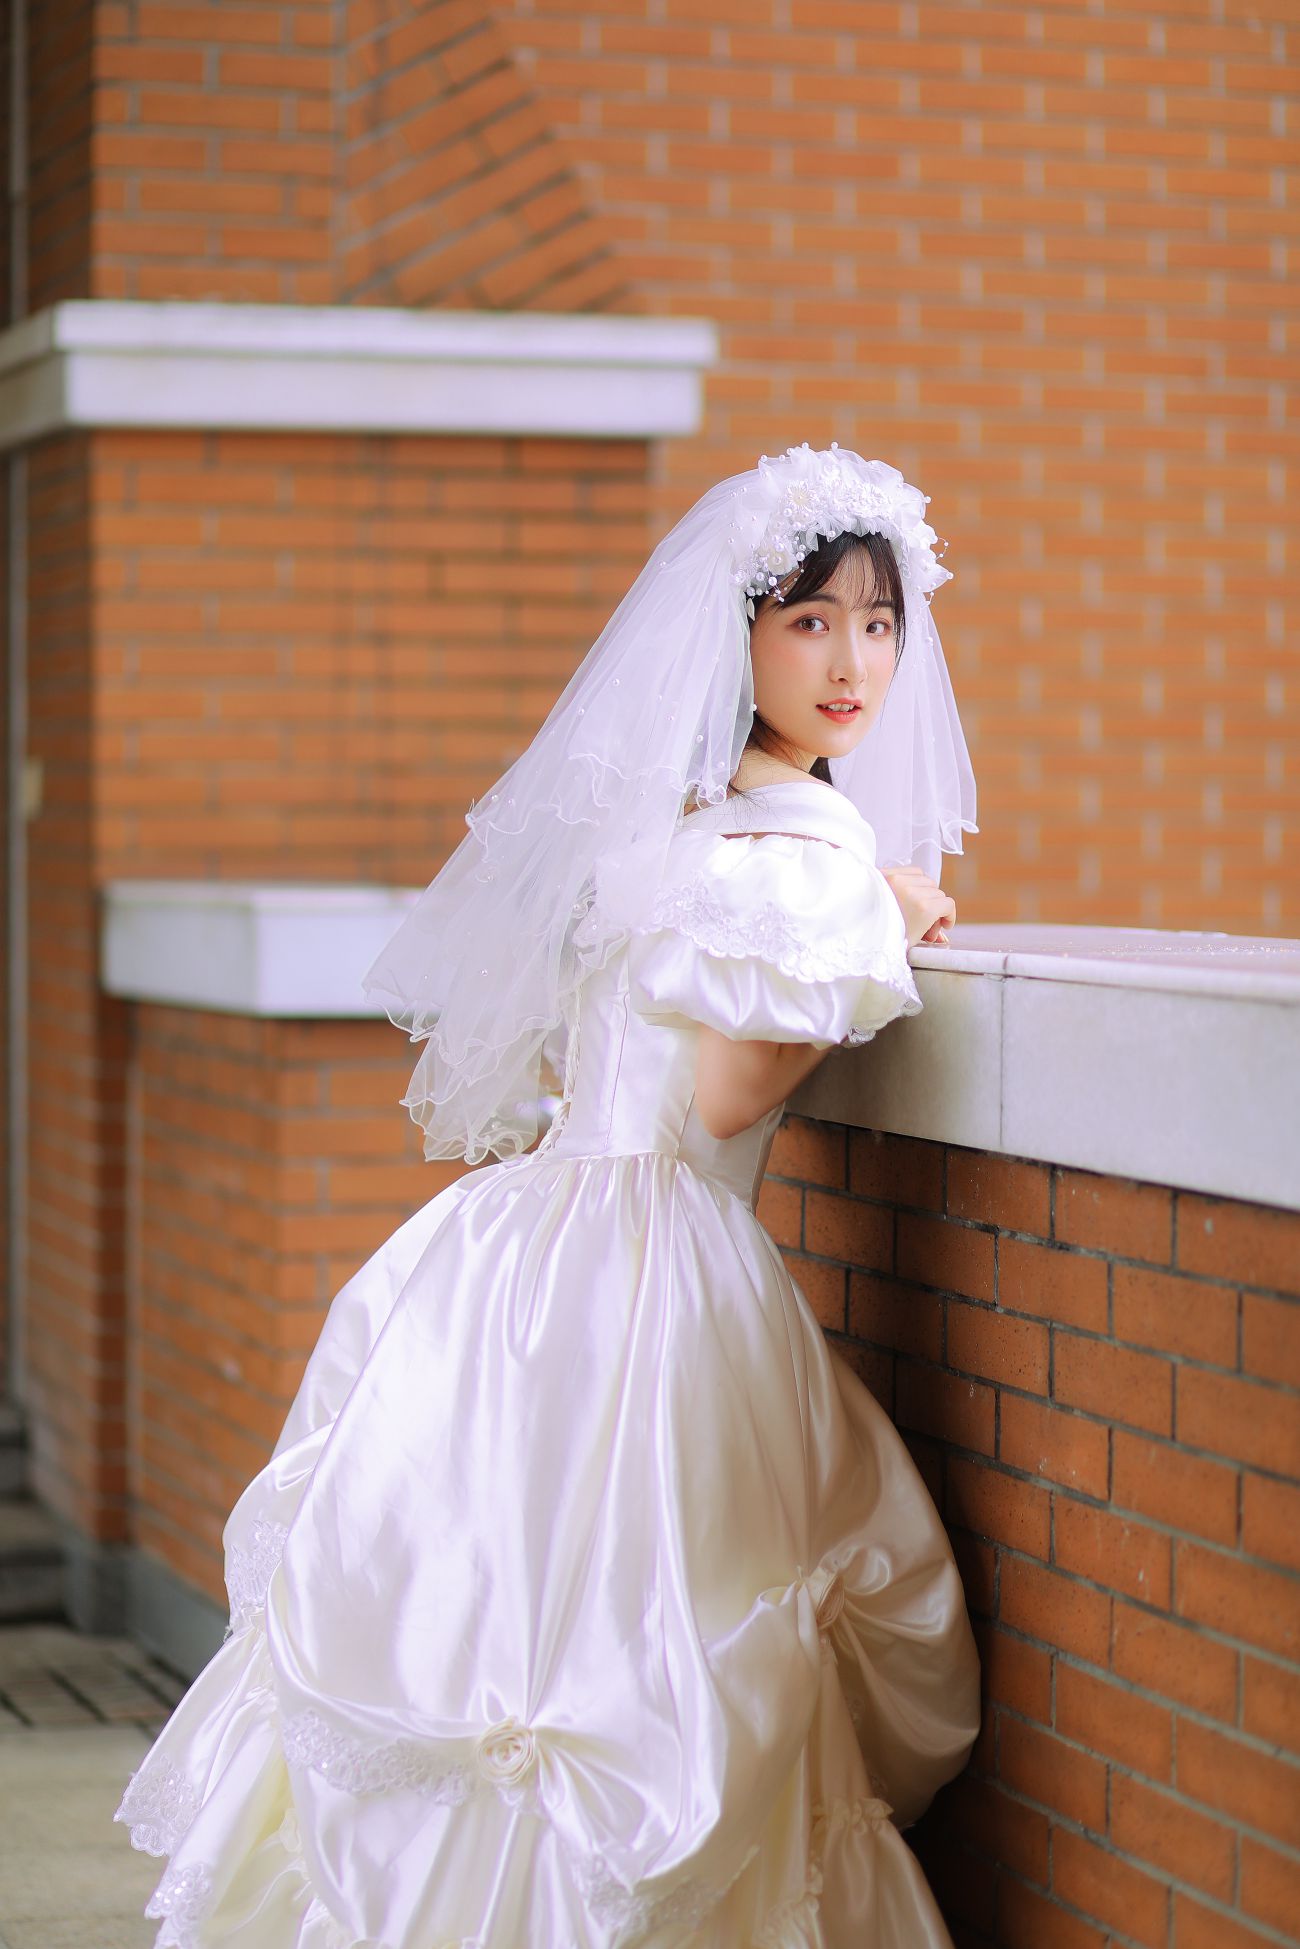 YITUYU艺图语模特唯美写真2021.11.08期新娘的嫁纱我是金儿呀 (23)